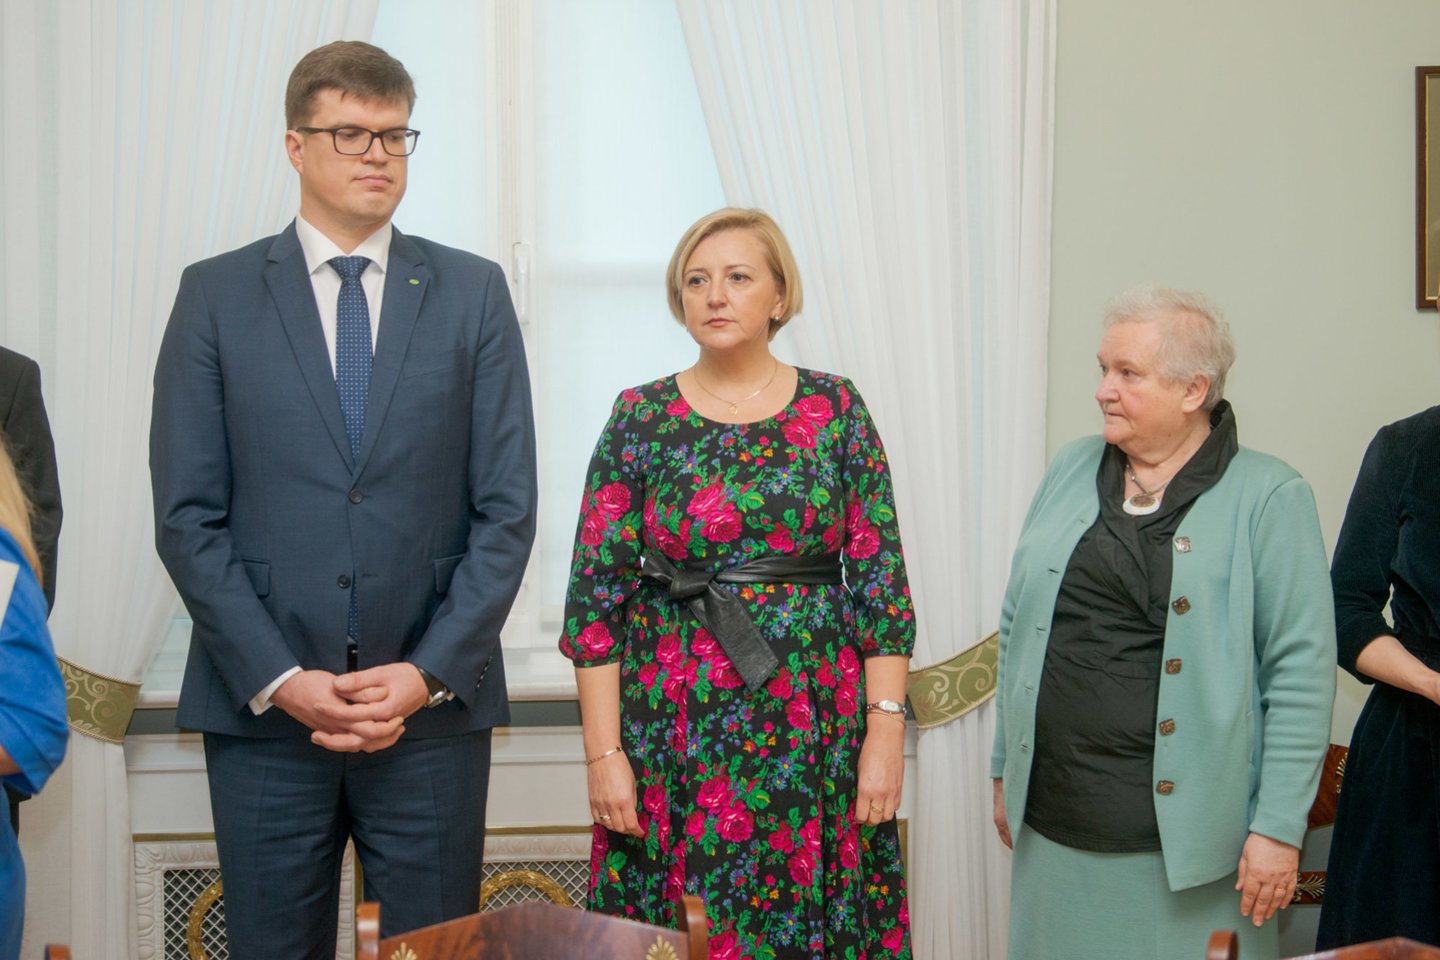  Ketvirtadienį D.Grybauskaitė su streikuojančiais mokytojais ir švietimo sektoriaus valdininkais aptarė susidariusią situaciją.<br> J.Stacevičiaus nuotr.